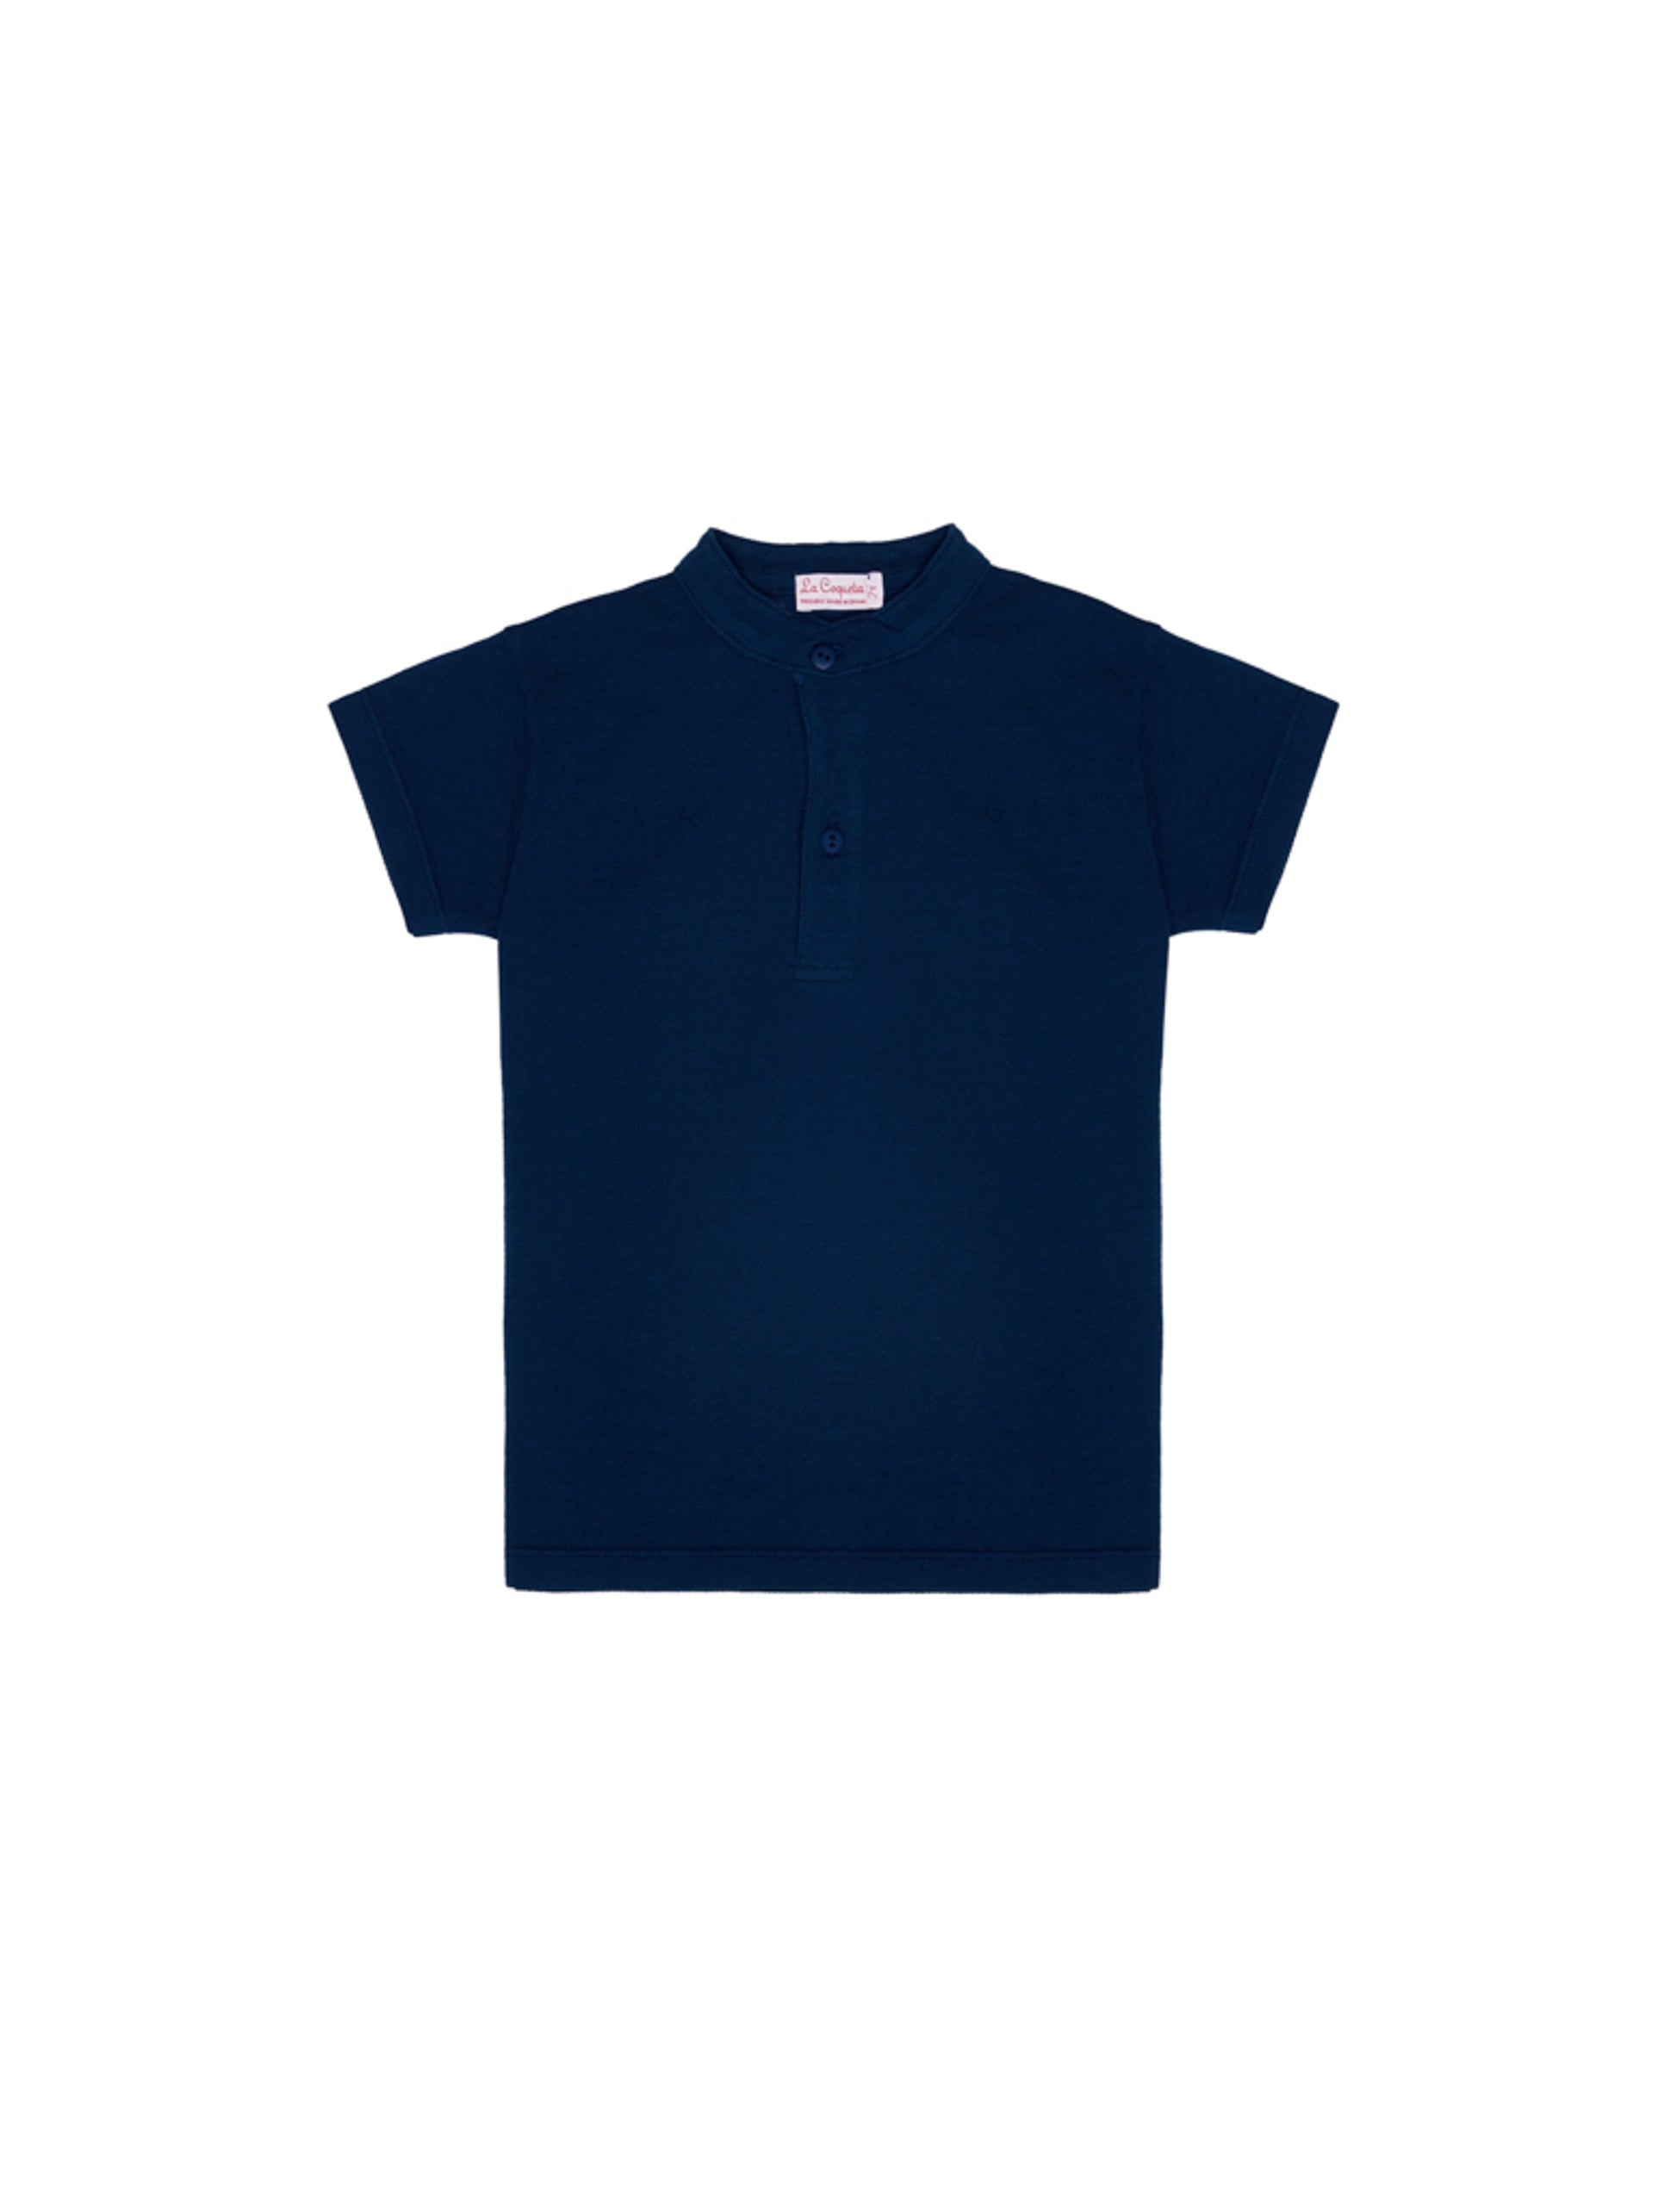 Navy Alcon Boy Polo Shirt